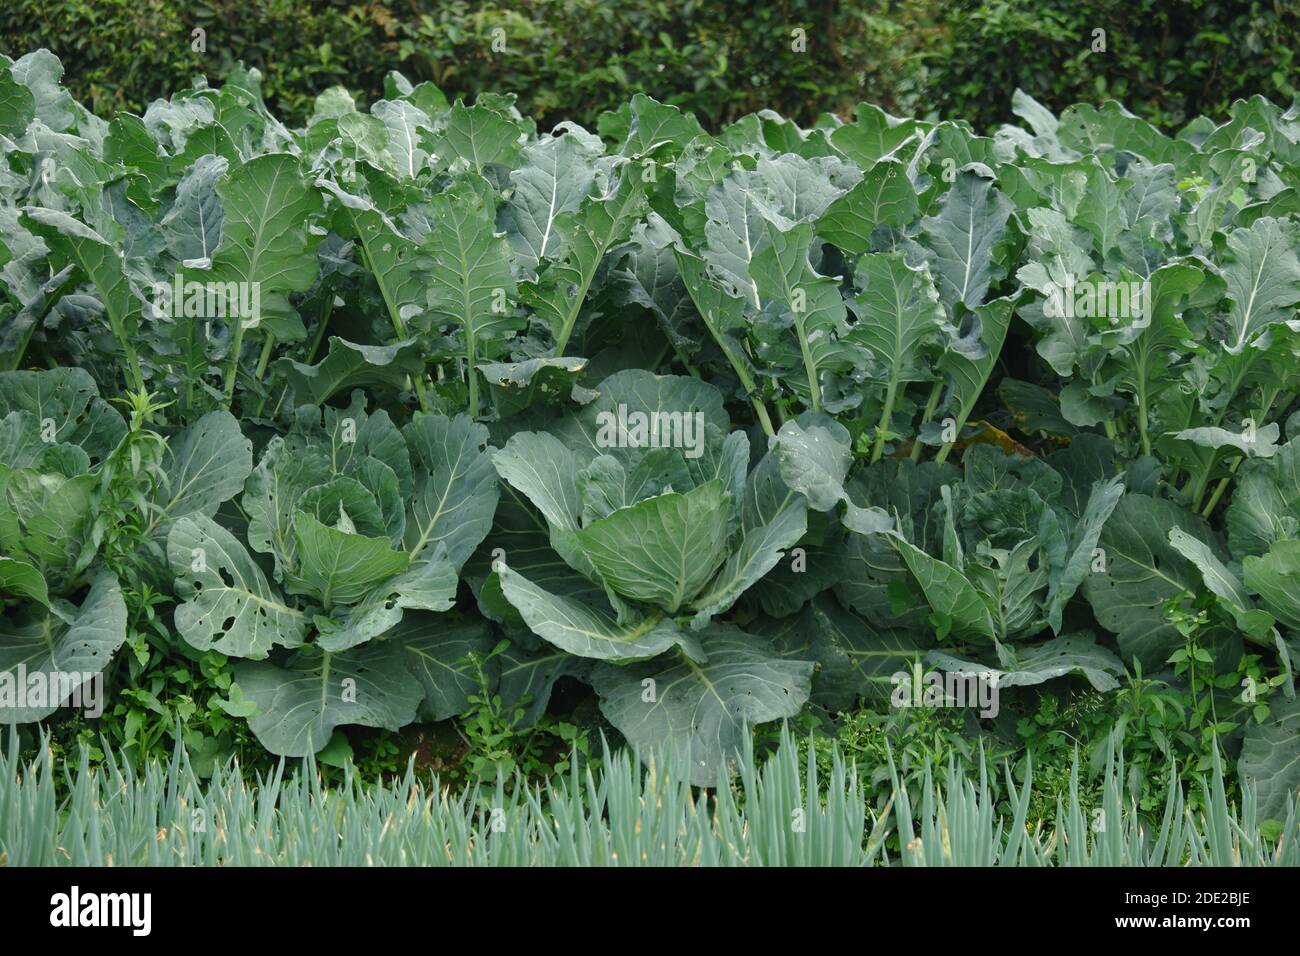 Outdoor-Gemüsepflanze im Feld Kohl (Brassica oleracea oder B. oleracea Mitglied der Gattung Brassica und der Senffamilie Brassicaceae Stockfoto